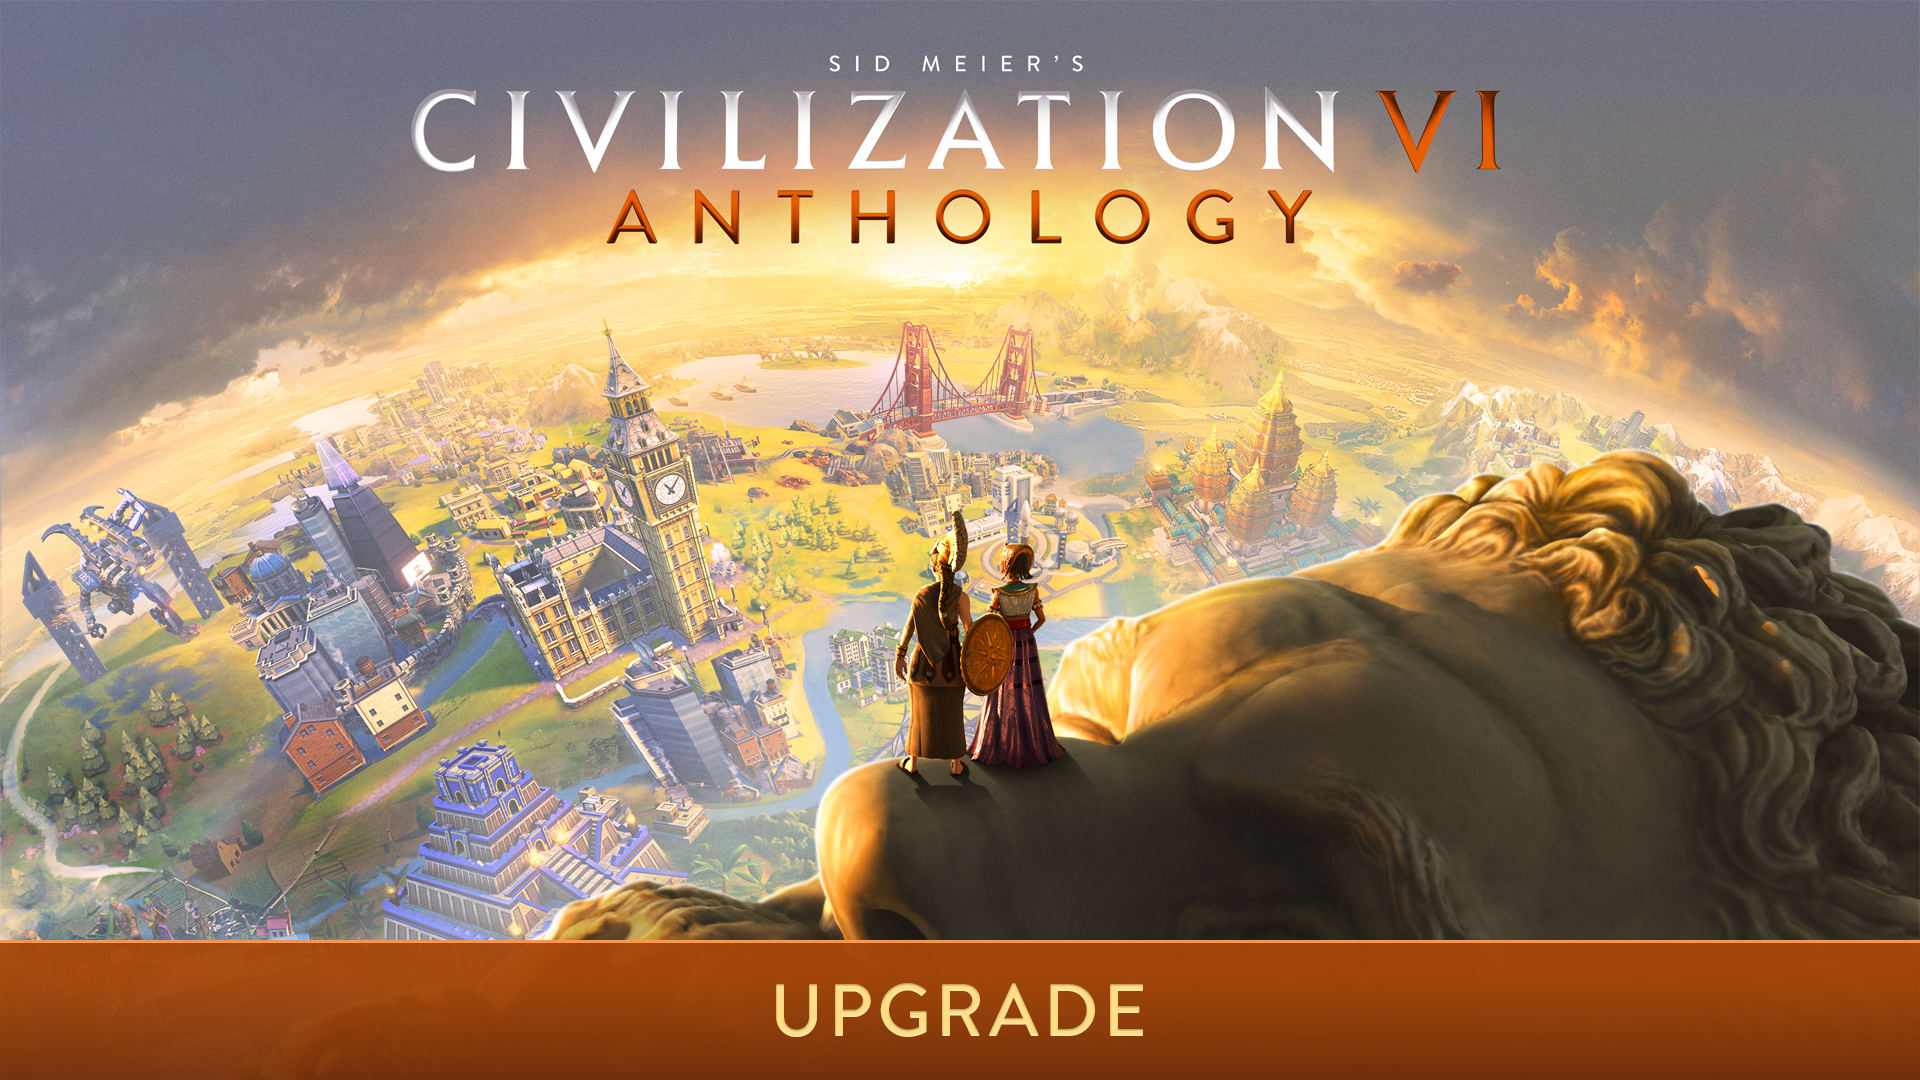 Sid Meier’s Civilization® VI Anthology Upgrade Bundle